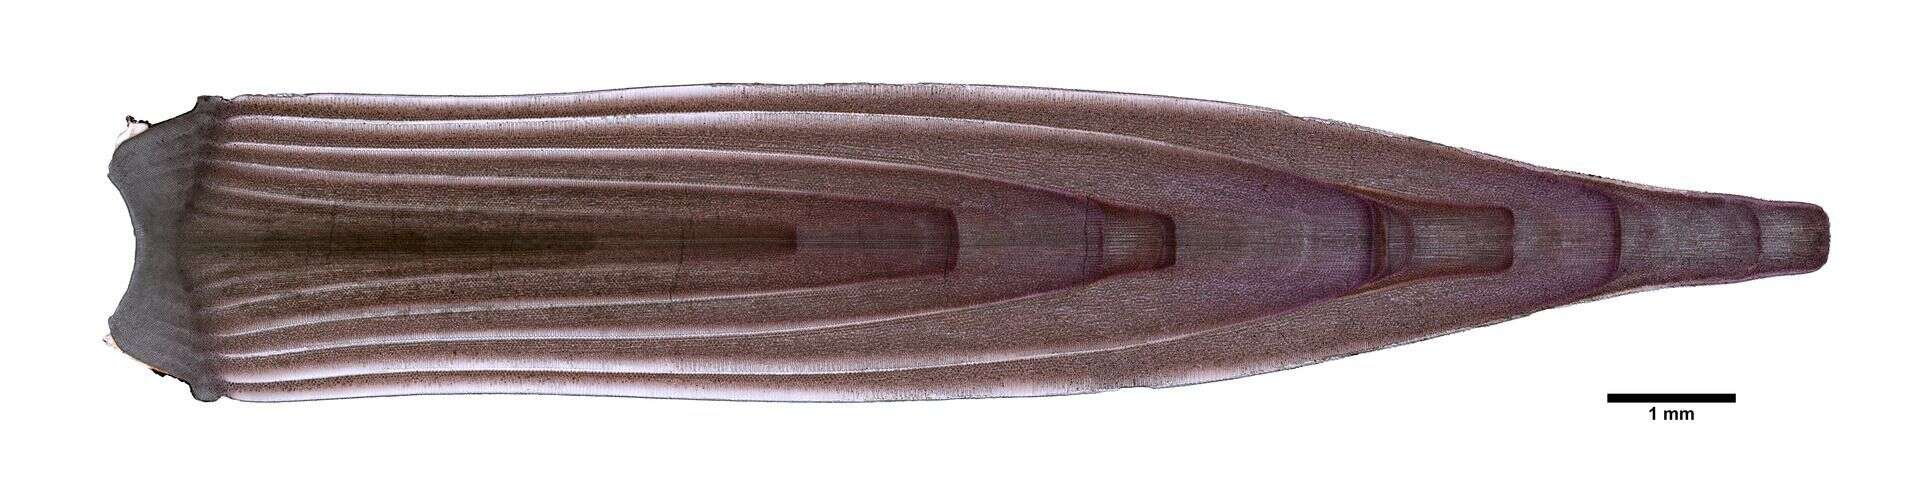 Image of Echinometra oblonga (Blainville 1825)